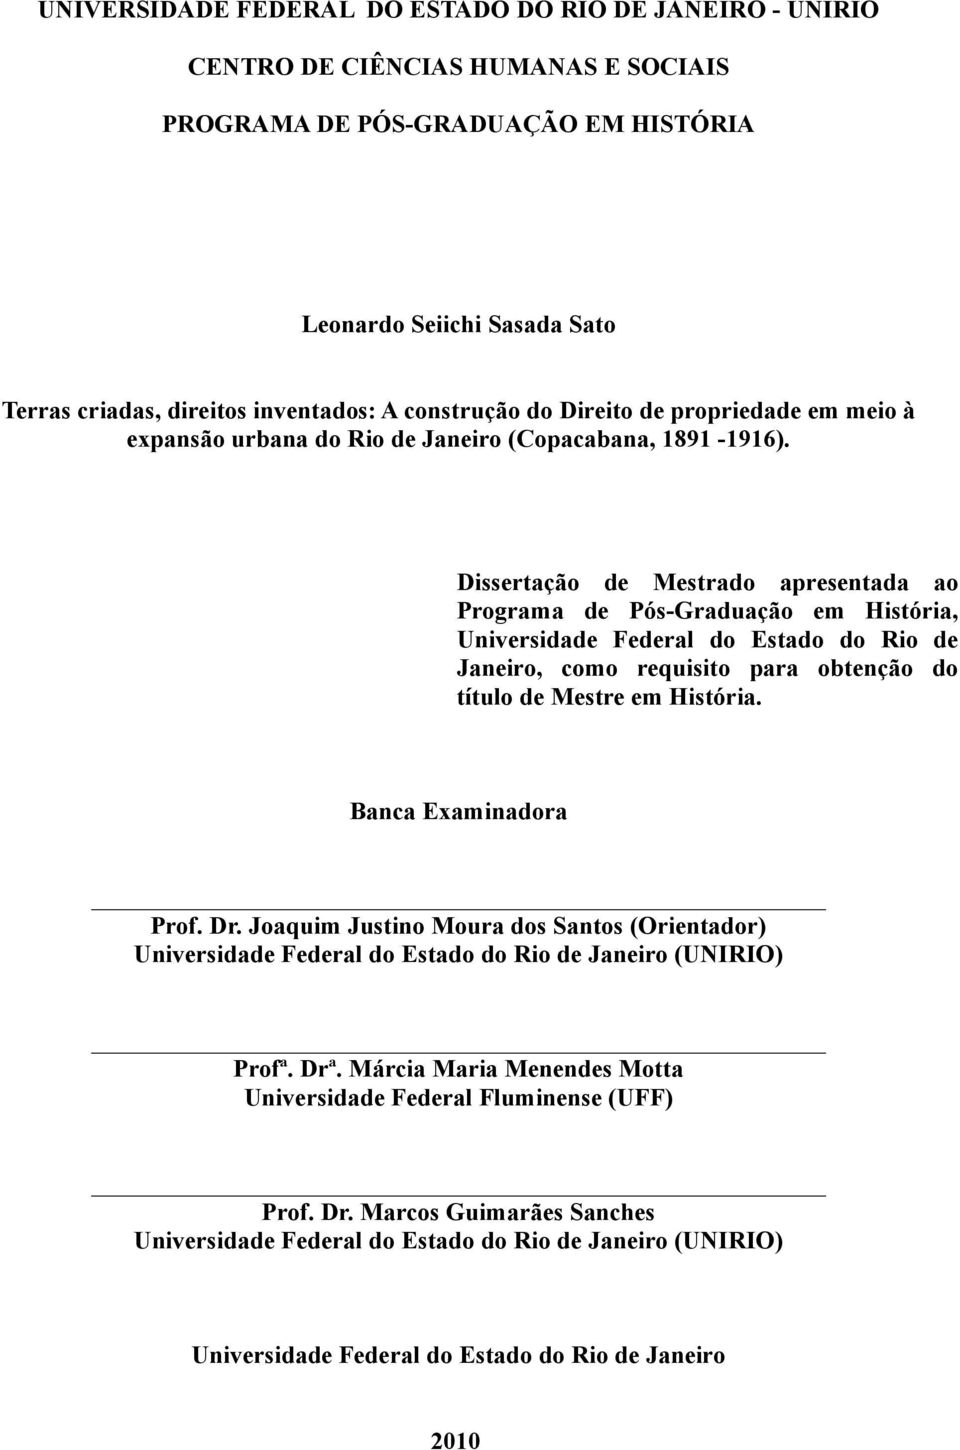 Dissertação de Mestrado apresentada ao Programa de Pós-Graduação em História, Universidade Federal do Estado do Rio de Janeiro, como requisito para obtenção do título de Mestre em História.